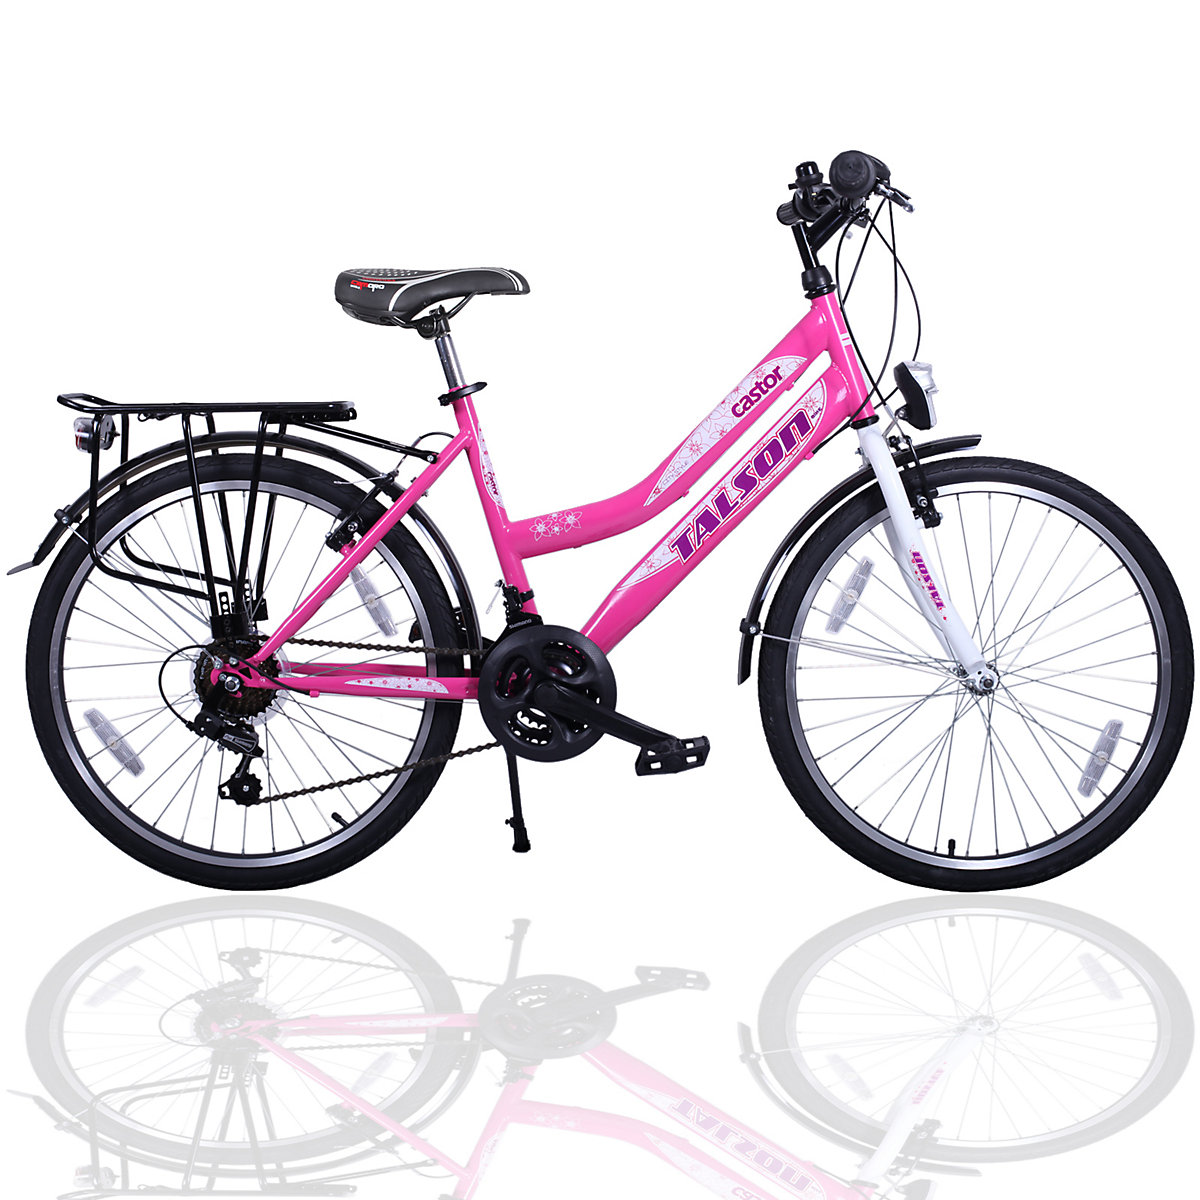 TALSON24 City-Fahrrad 26 Zoll mit Beleuchtung und Gepäckträger 21 Gänge Damenfahrrad Rosa